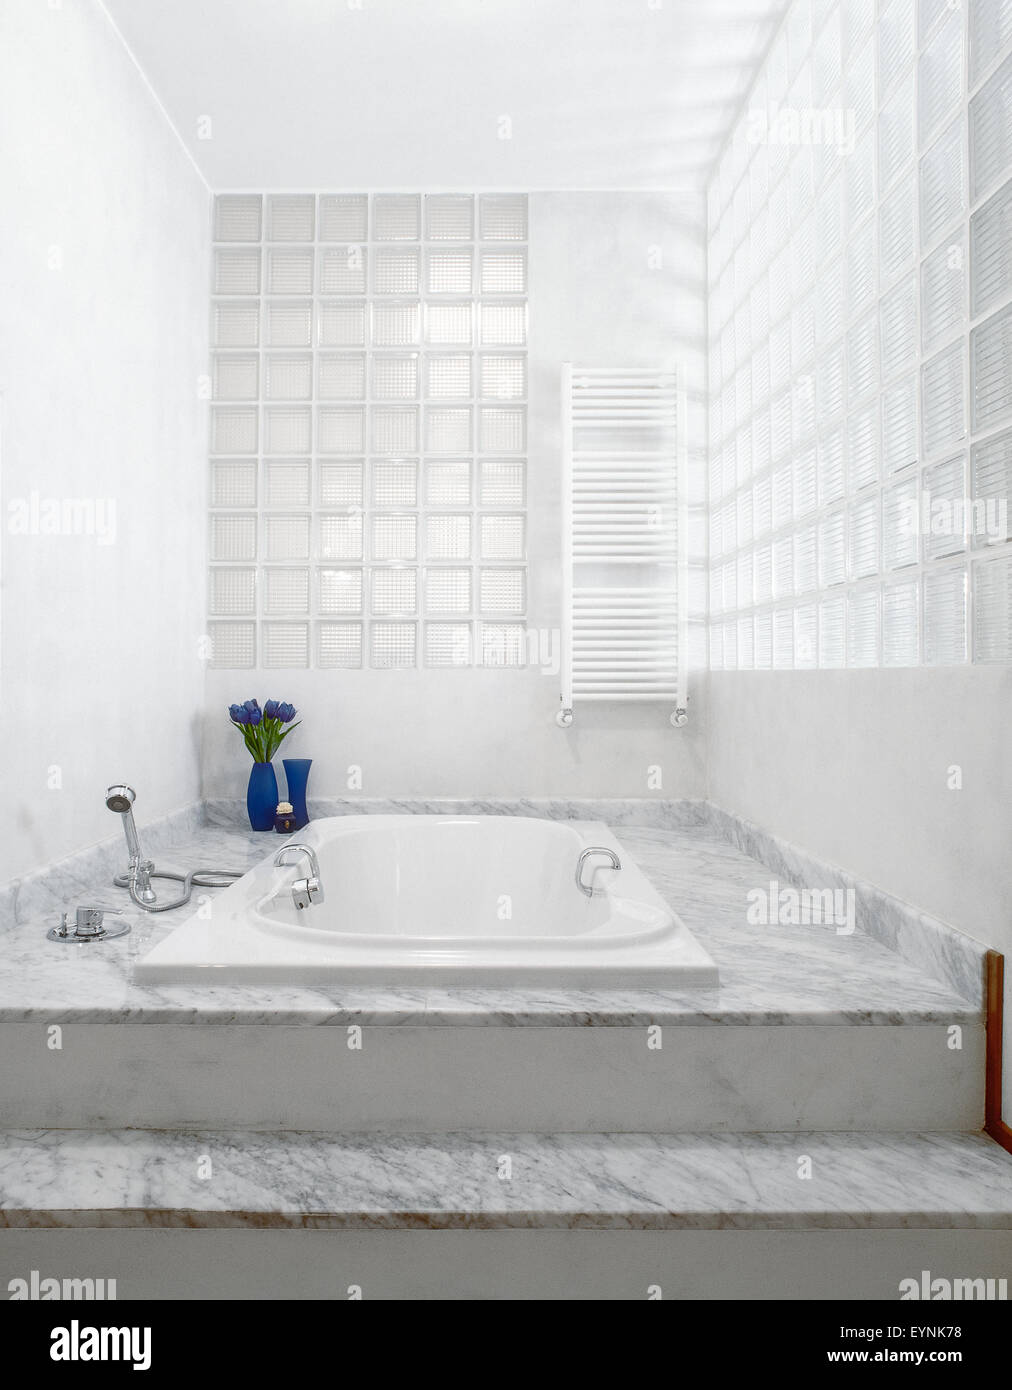 Primo piano di una vasca incassata nell'accesso rialzato piano di marmo nella stanza da bagno molto moderna con un muro fatto di mattoni in vetro Foto Stock